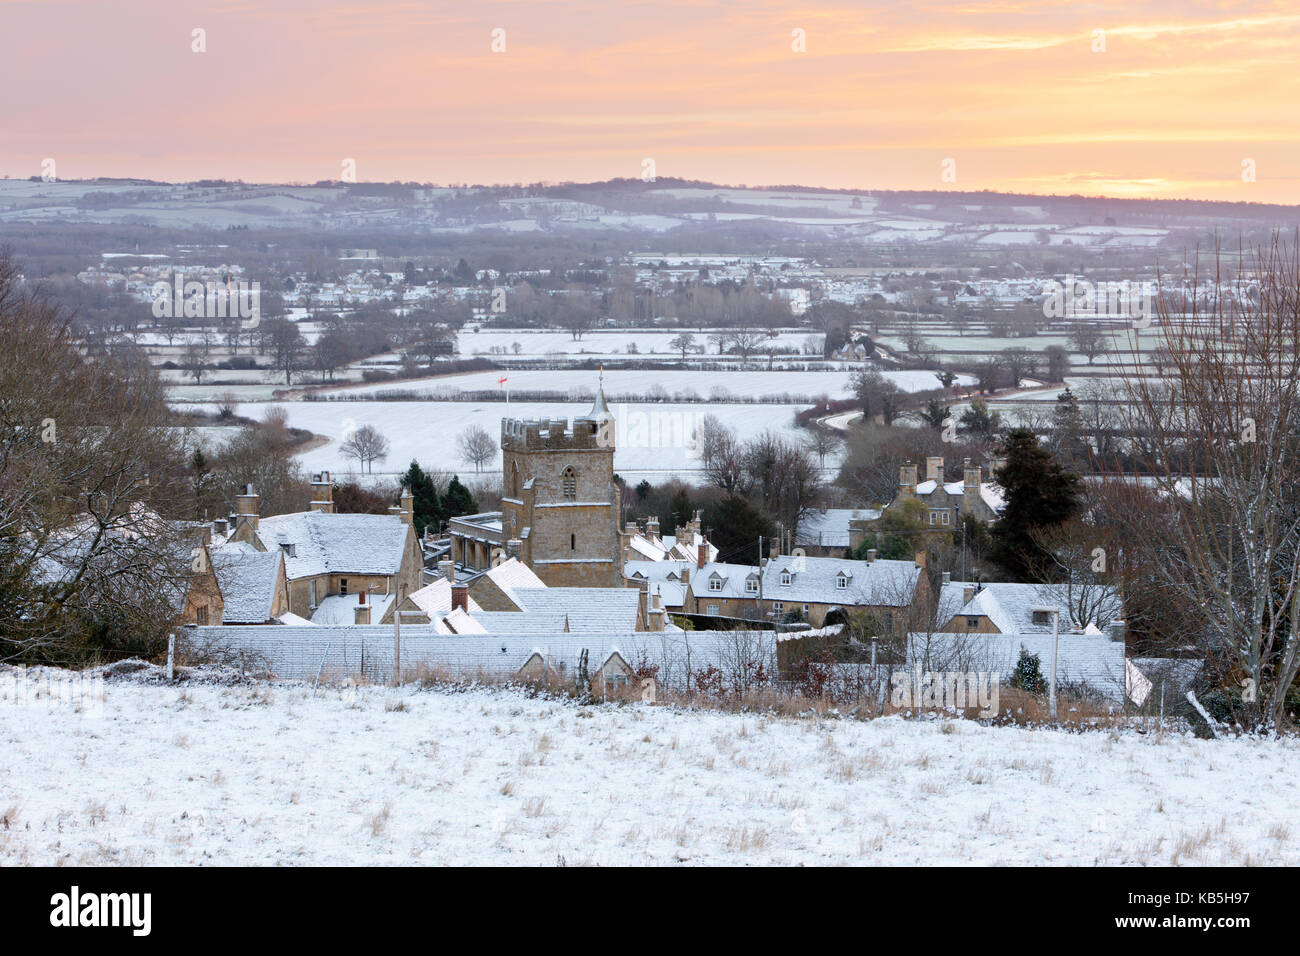 Villaggio costwold e paesaggio in neve a sunrise, Bourton-on-the-Hill, Cotswolds, Gloucestershire, England, Regno Unito Foto Stock